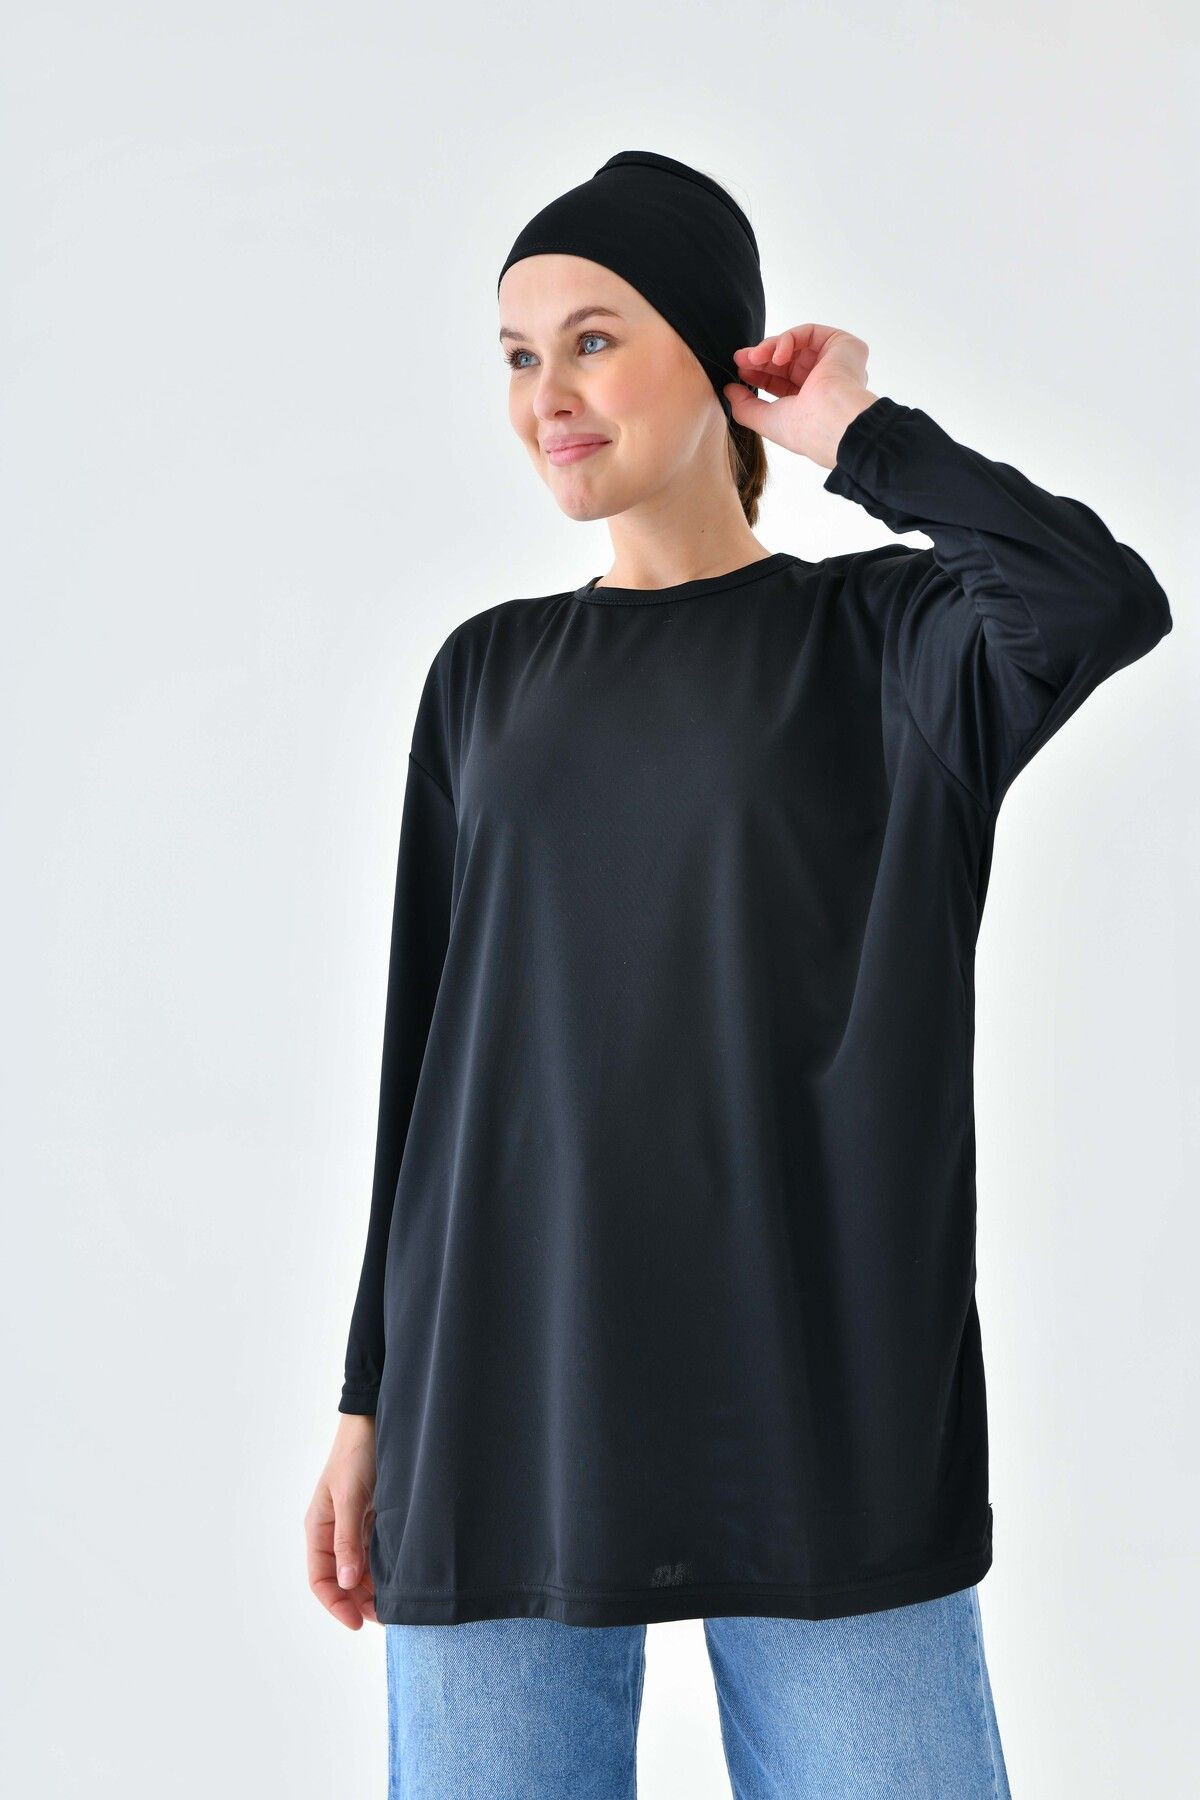 mirach Uzun Kollu Örme Tunik - Siyah Kadın Tesettür Tunik Modest Tunik Örme Elbise Uzun Kollu Elbise